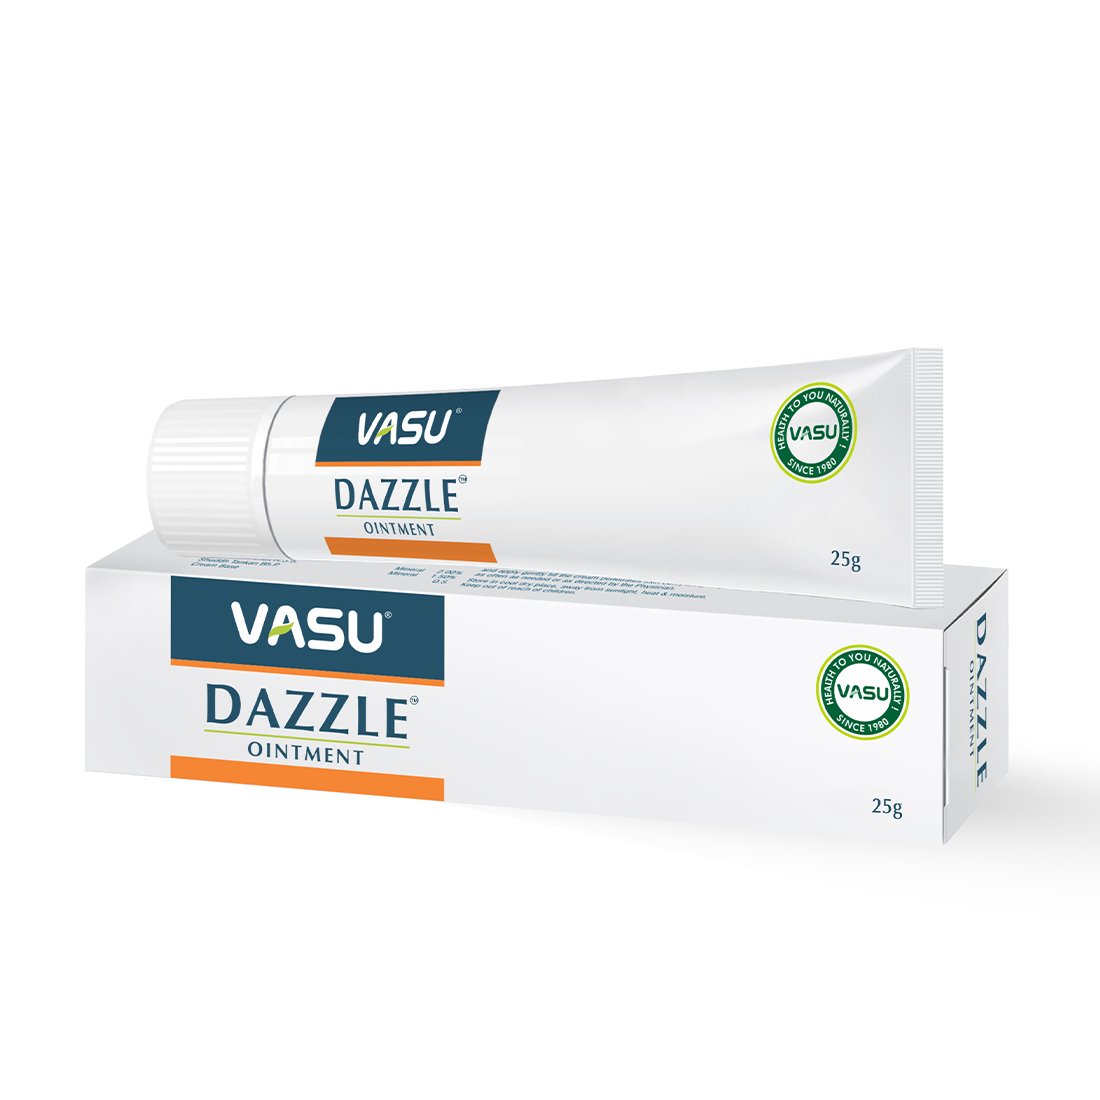 Buy Vasu Dazzle Ointment at Best Price Online